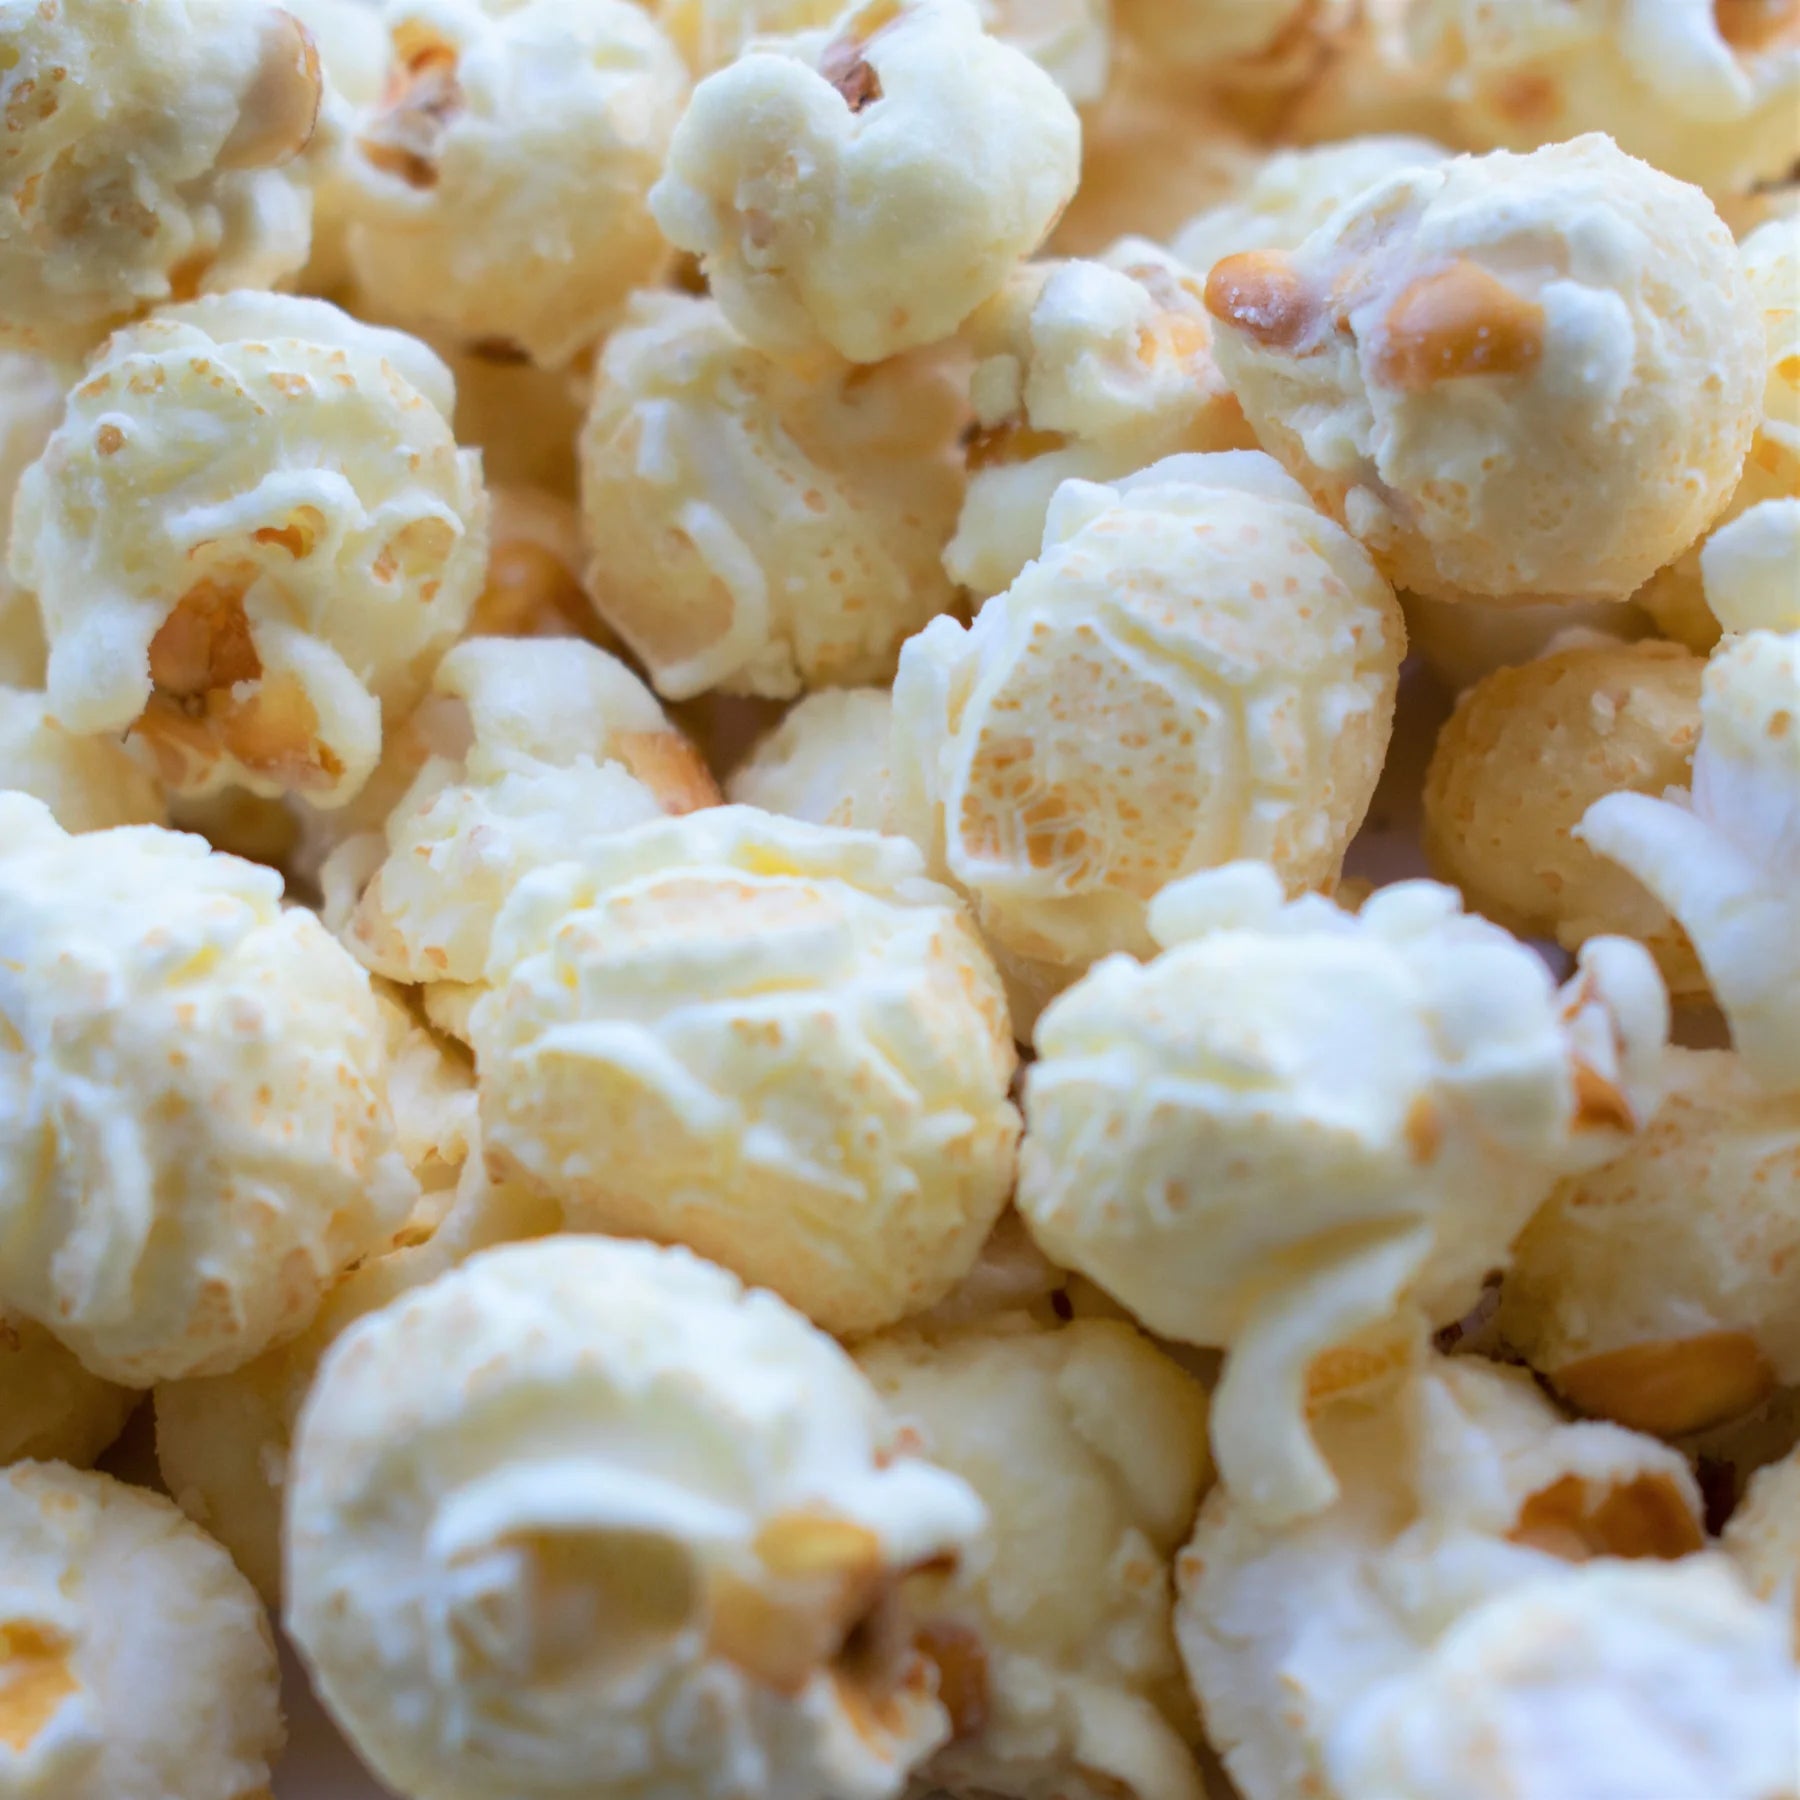 Pack de Pop-Corn gourmand - Célébration - Popcorn Shed - Ma Jolie Bougie